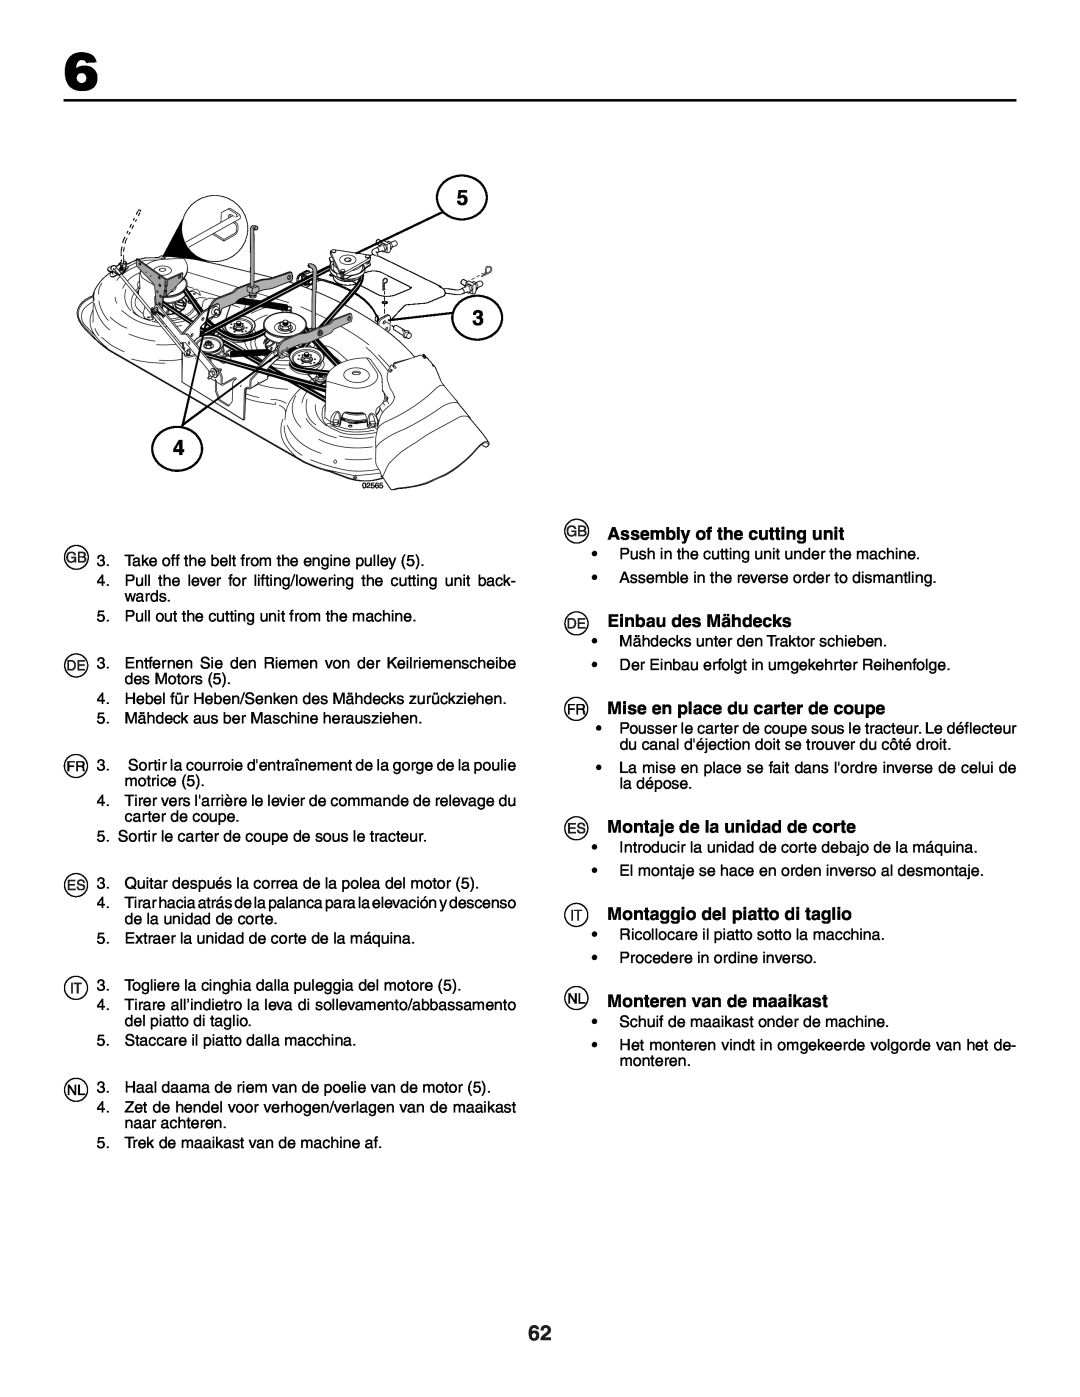 Husqvarna GTH250XP instruction manual Assembly of the cutting unit, Einbau des Mähdecks, Mise en place du carter de coupe 